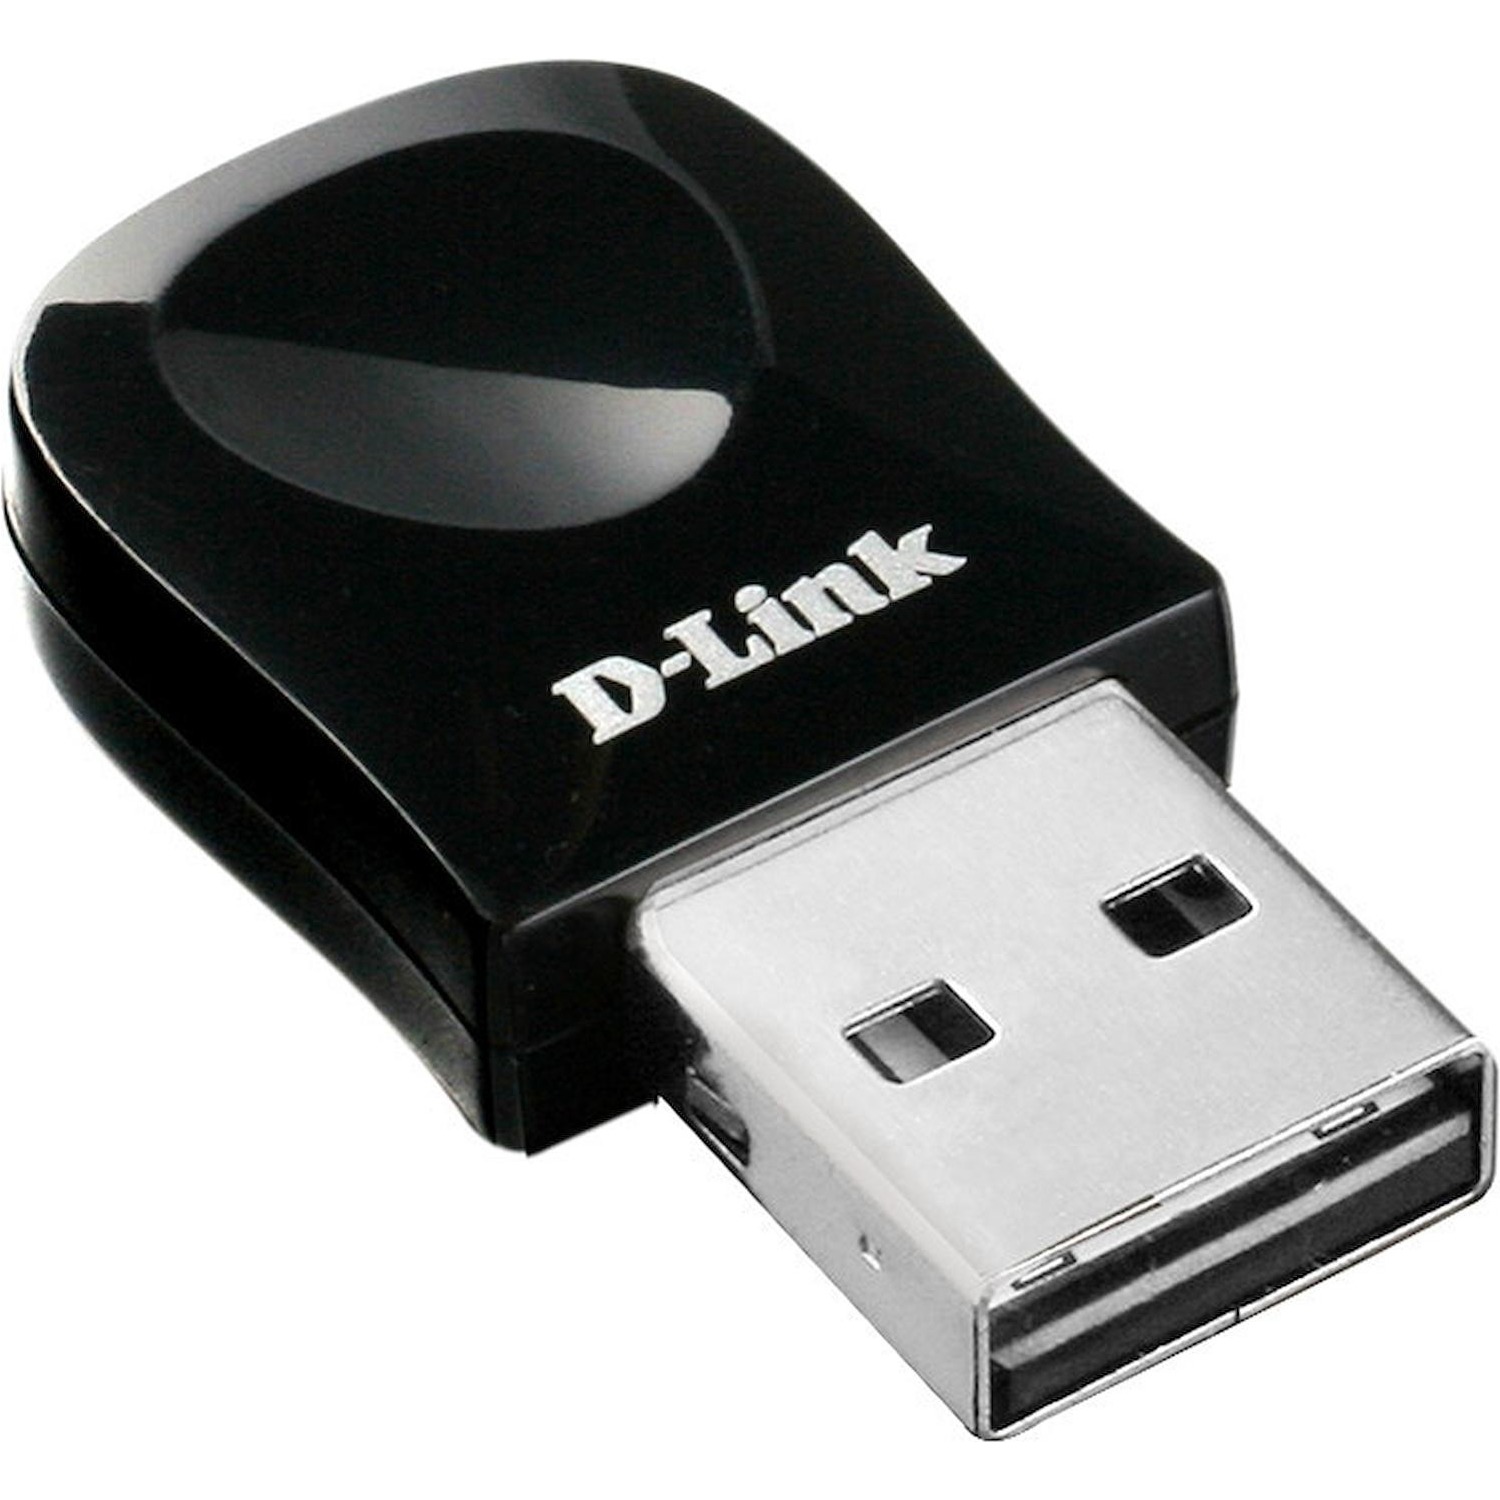 Immagine per Adattatore micro dongle D-Link USB300N  DWA-131 da DIMOStore